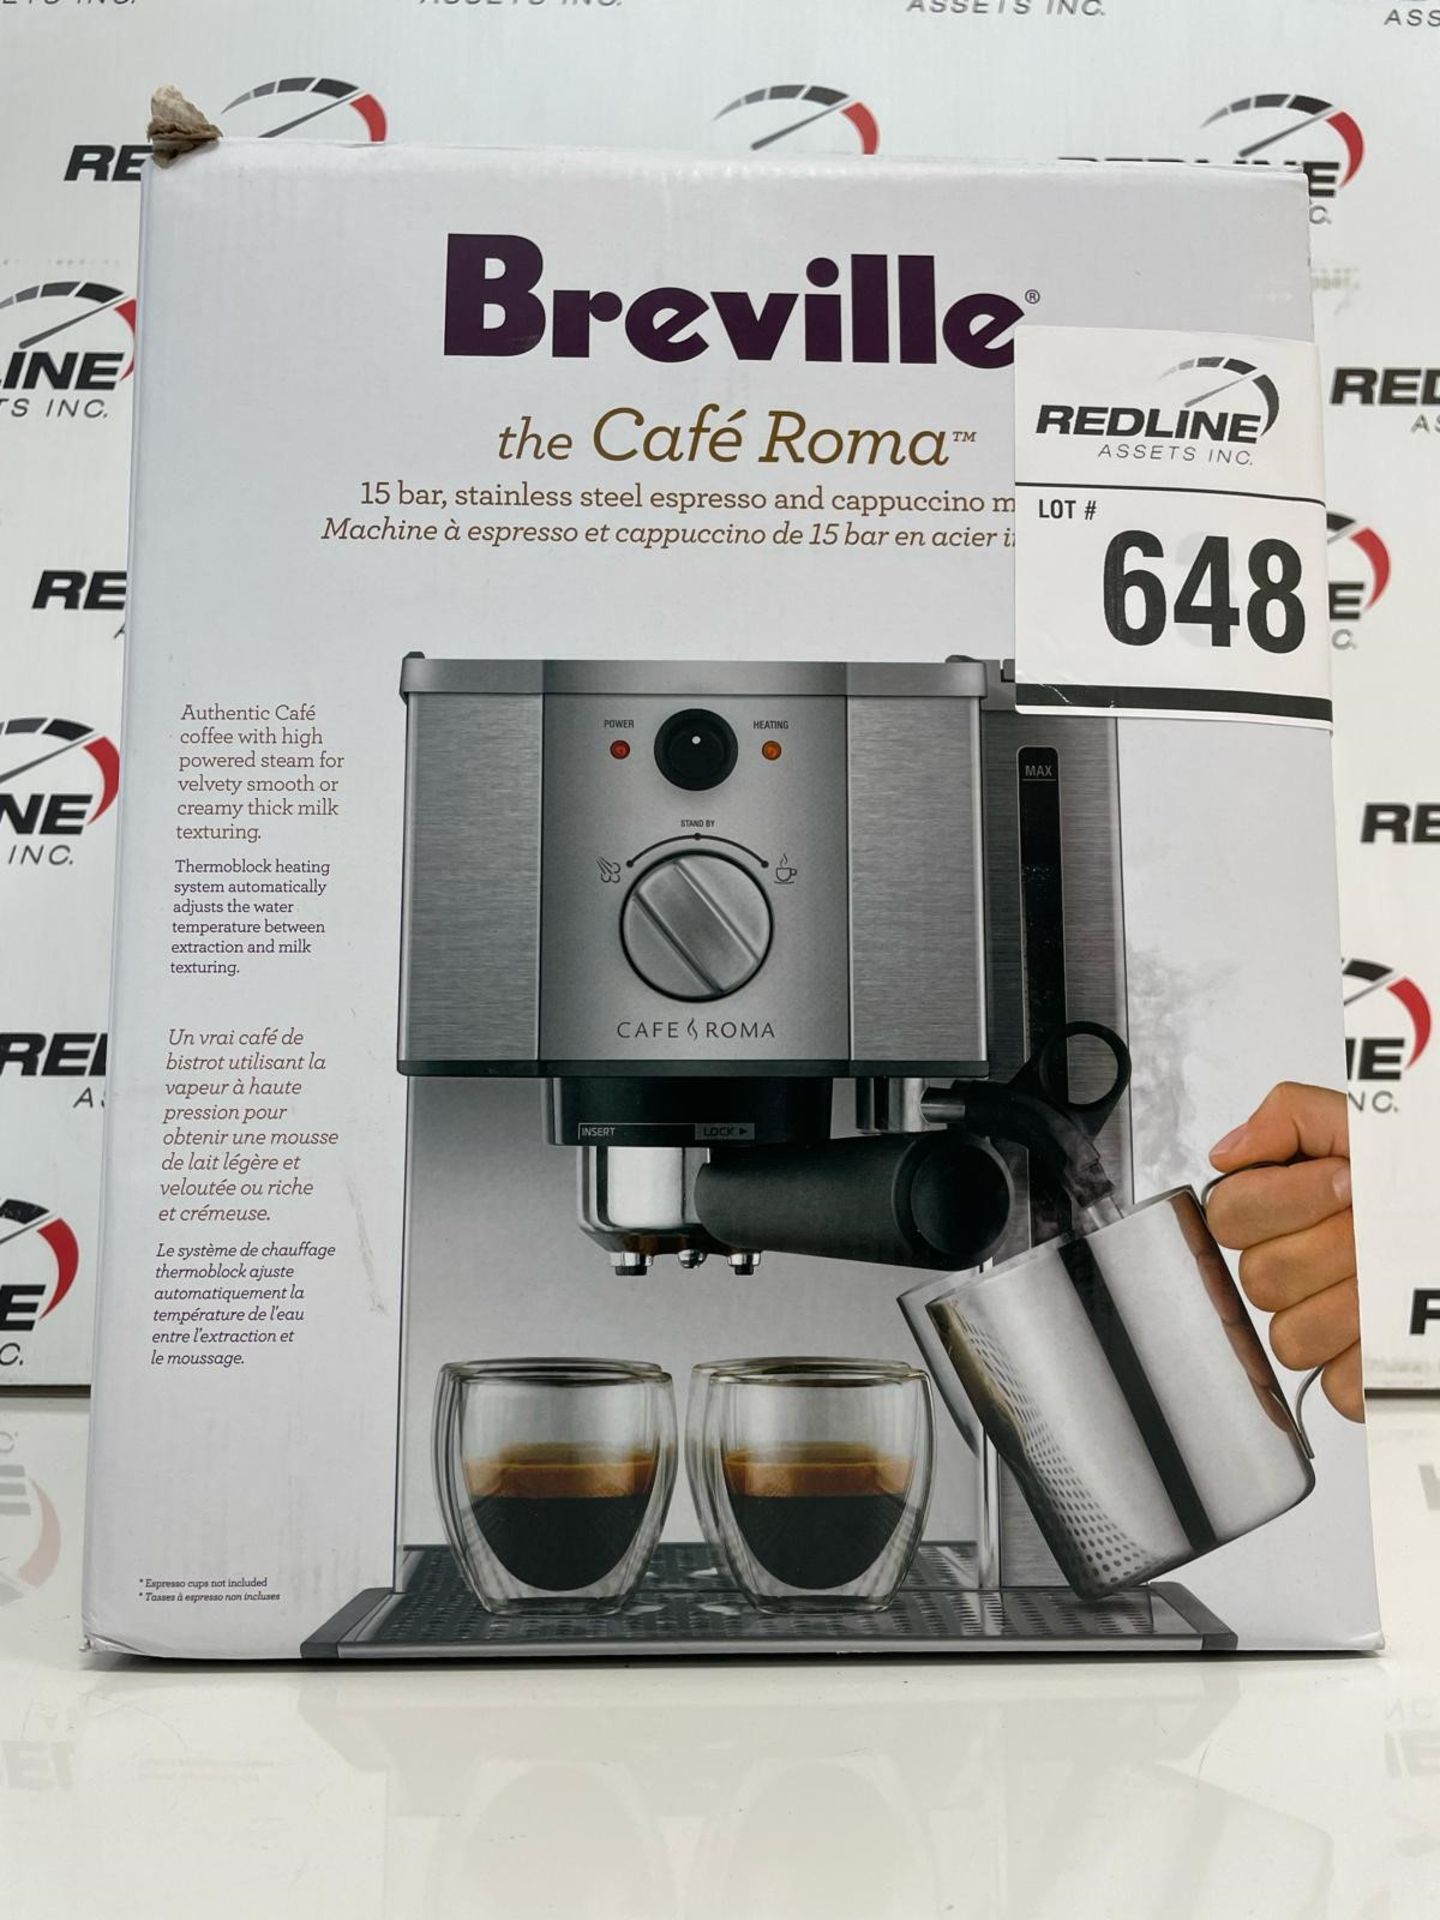 Breville - the Cafe Roma - Espresso & Cappuccino Machine